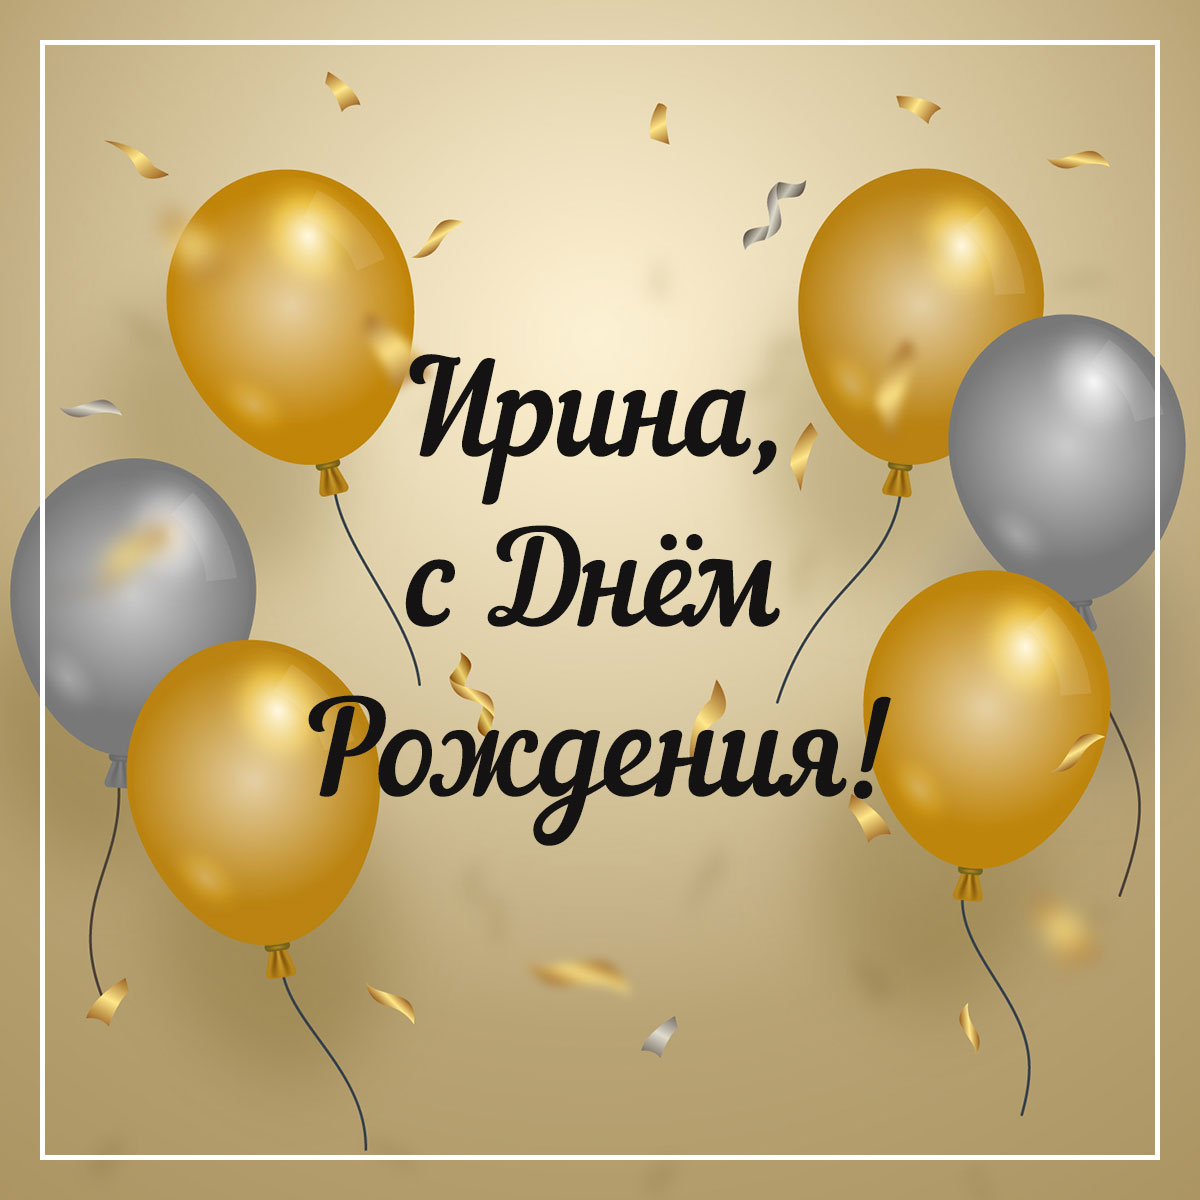 Золотистая открытка с текстом Ирина, с днем рождения и воздушными шарами.